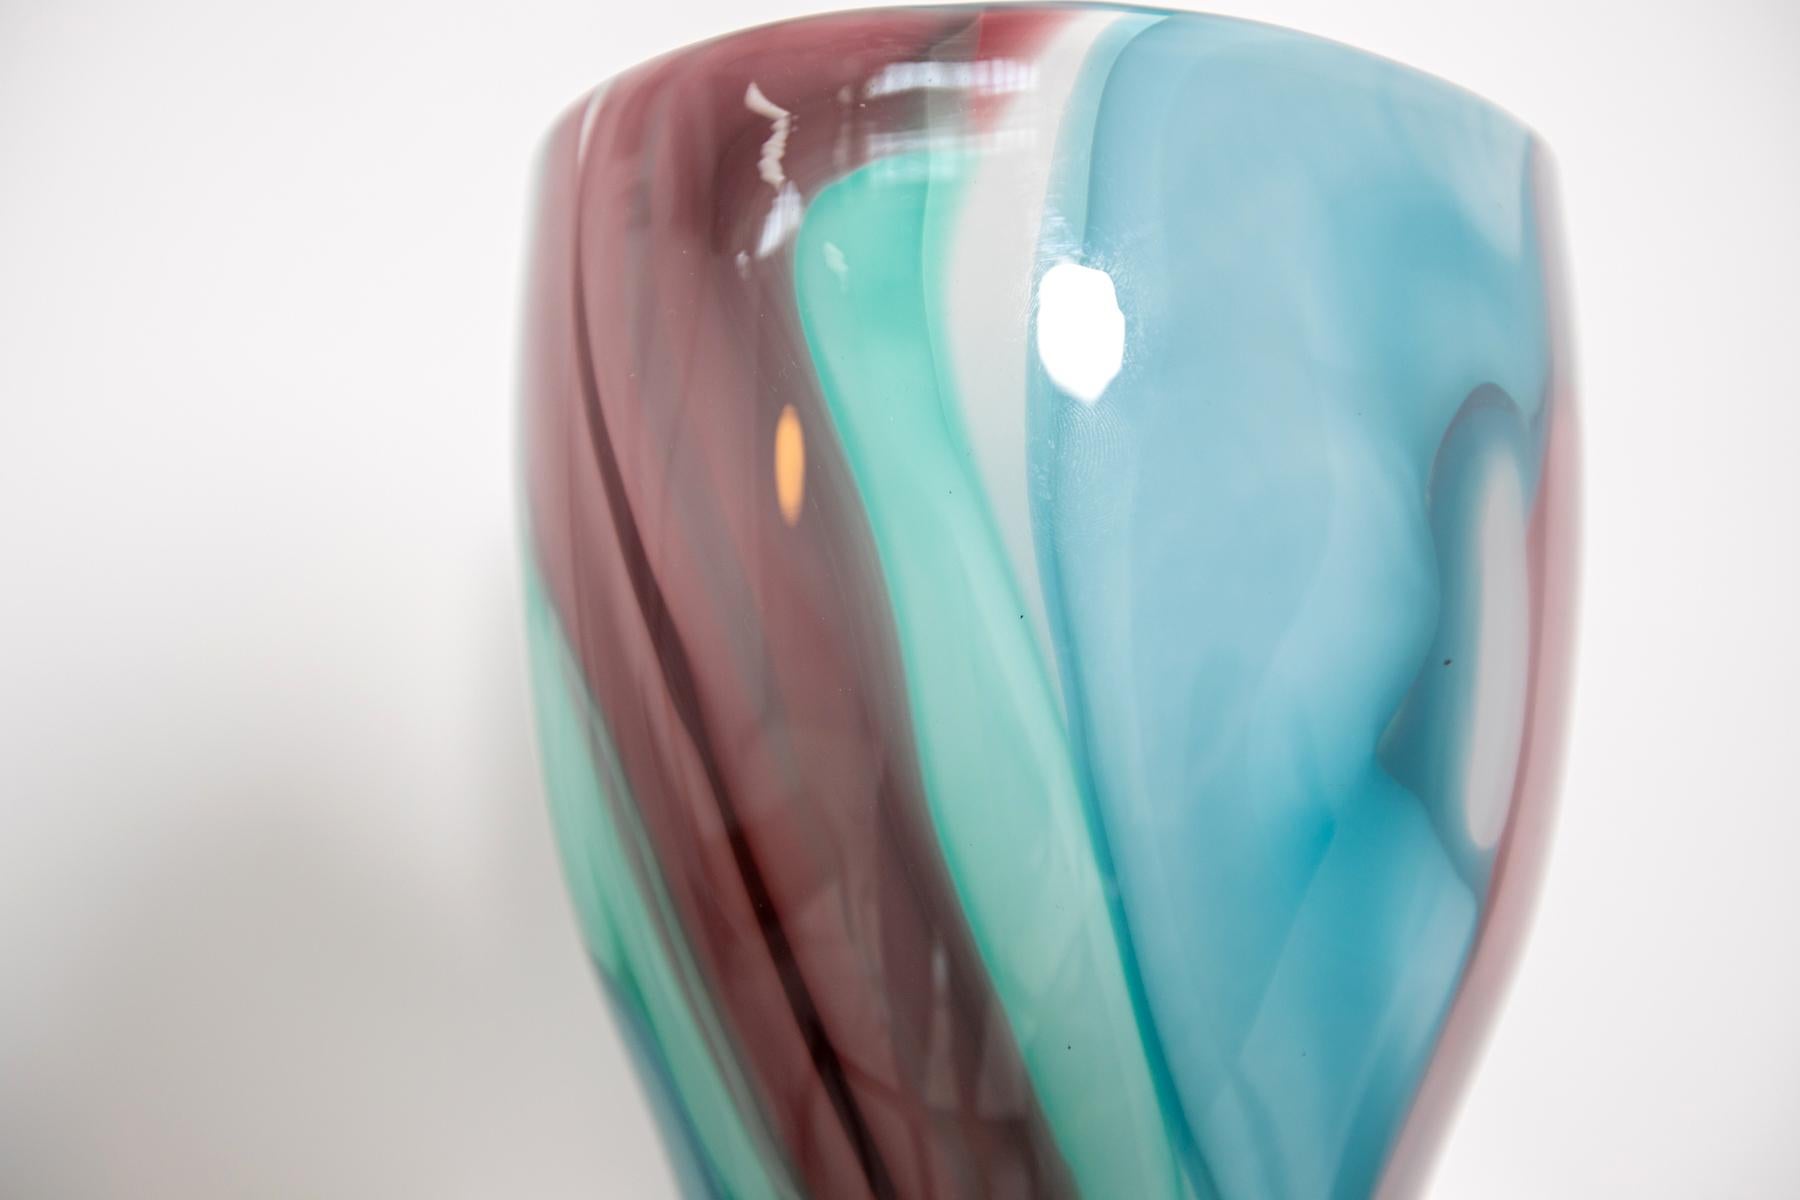 Seltene und wunderschöne Vase aus Murano-Glas von Emmanuel Babled für Venini von 1996.
Die seltene Vase von Emmanuel Babled ist ein Prototyp und ein echtes Kunstwerk.
Es wurde mit einer Reihe von besonderen Techniken für die Bearbeitung von